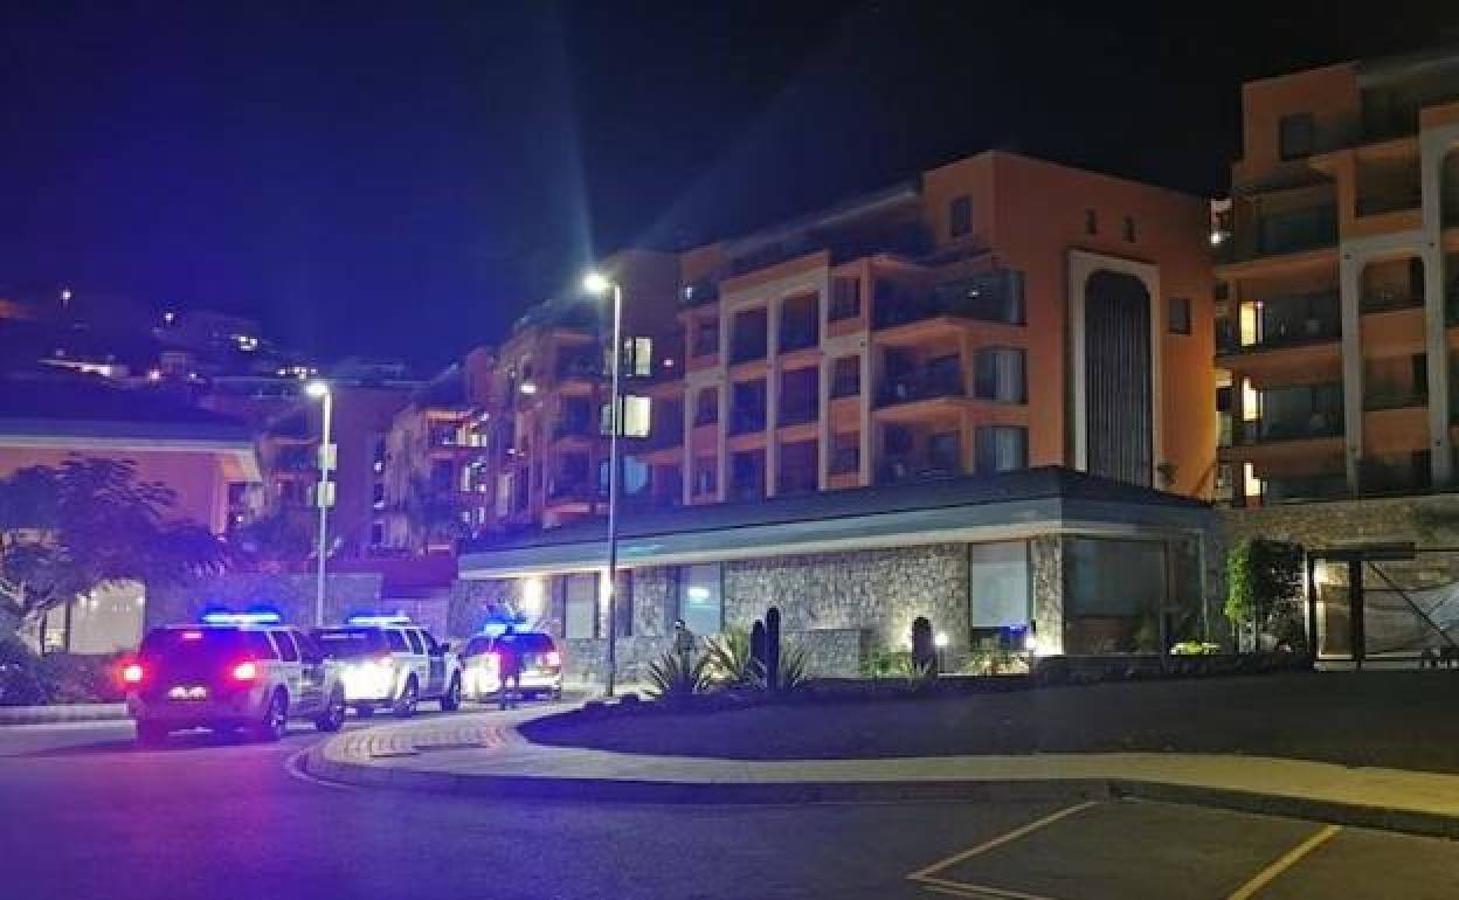 Varios incidentes protagonizados por inmigrantes que están alojados en establecimientos turísticos del sur de la isla. Tres guardias de seguridad resultaron heridos.